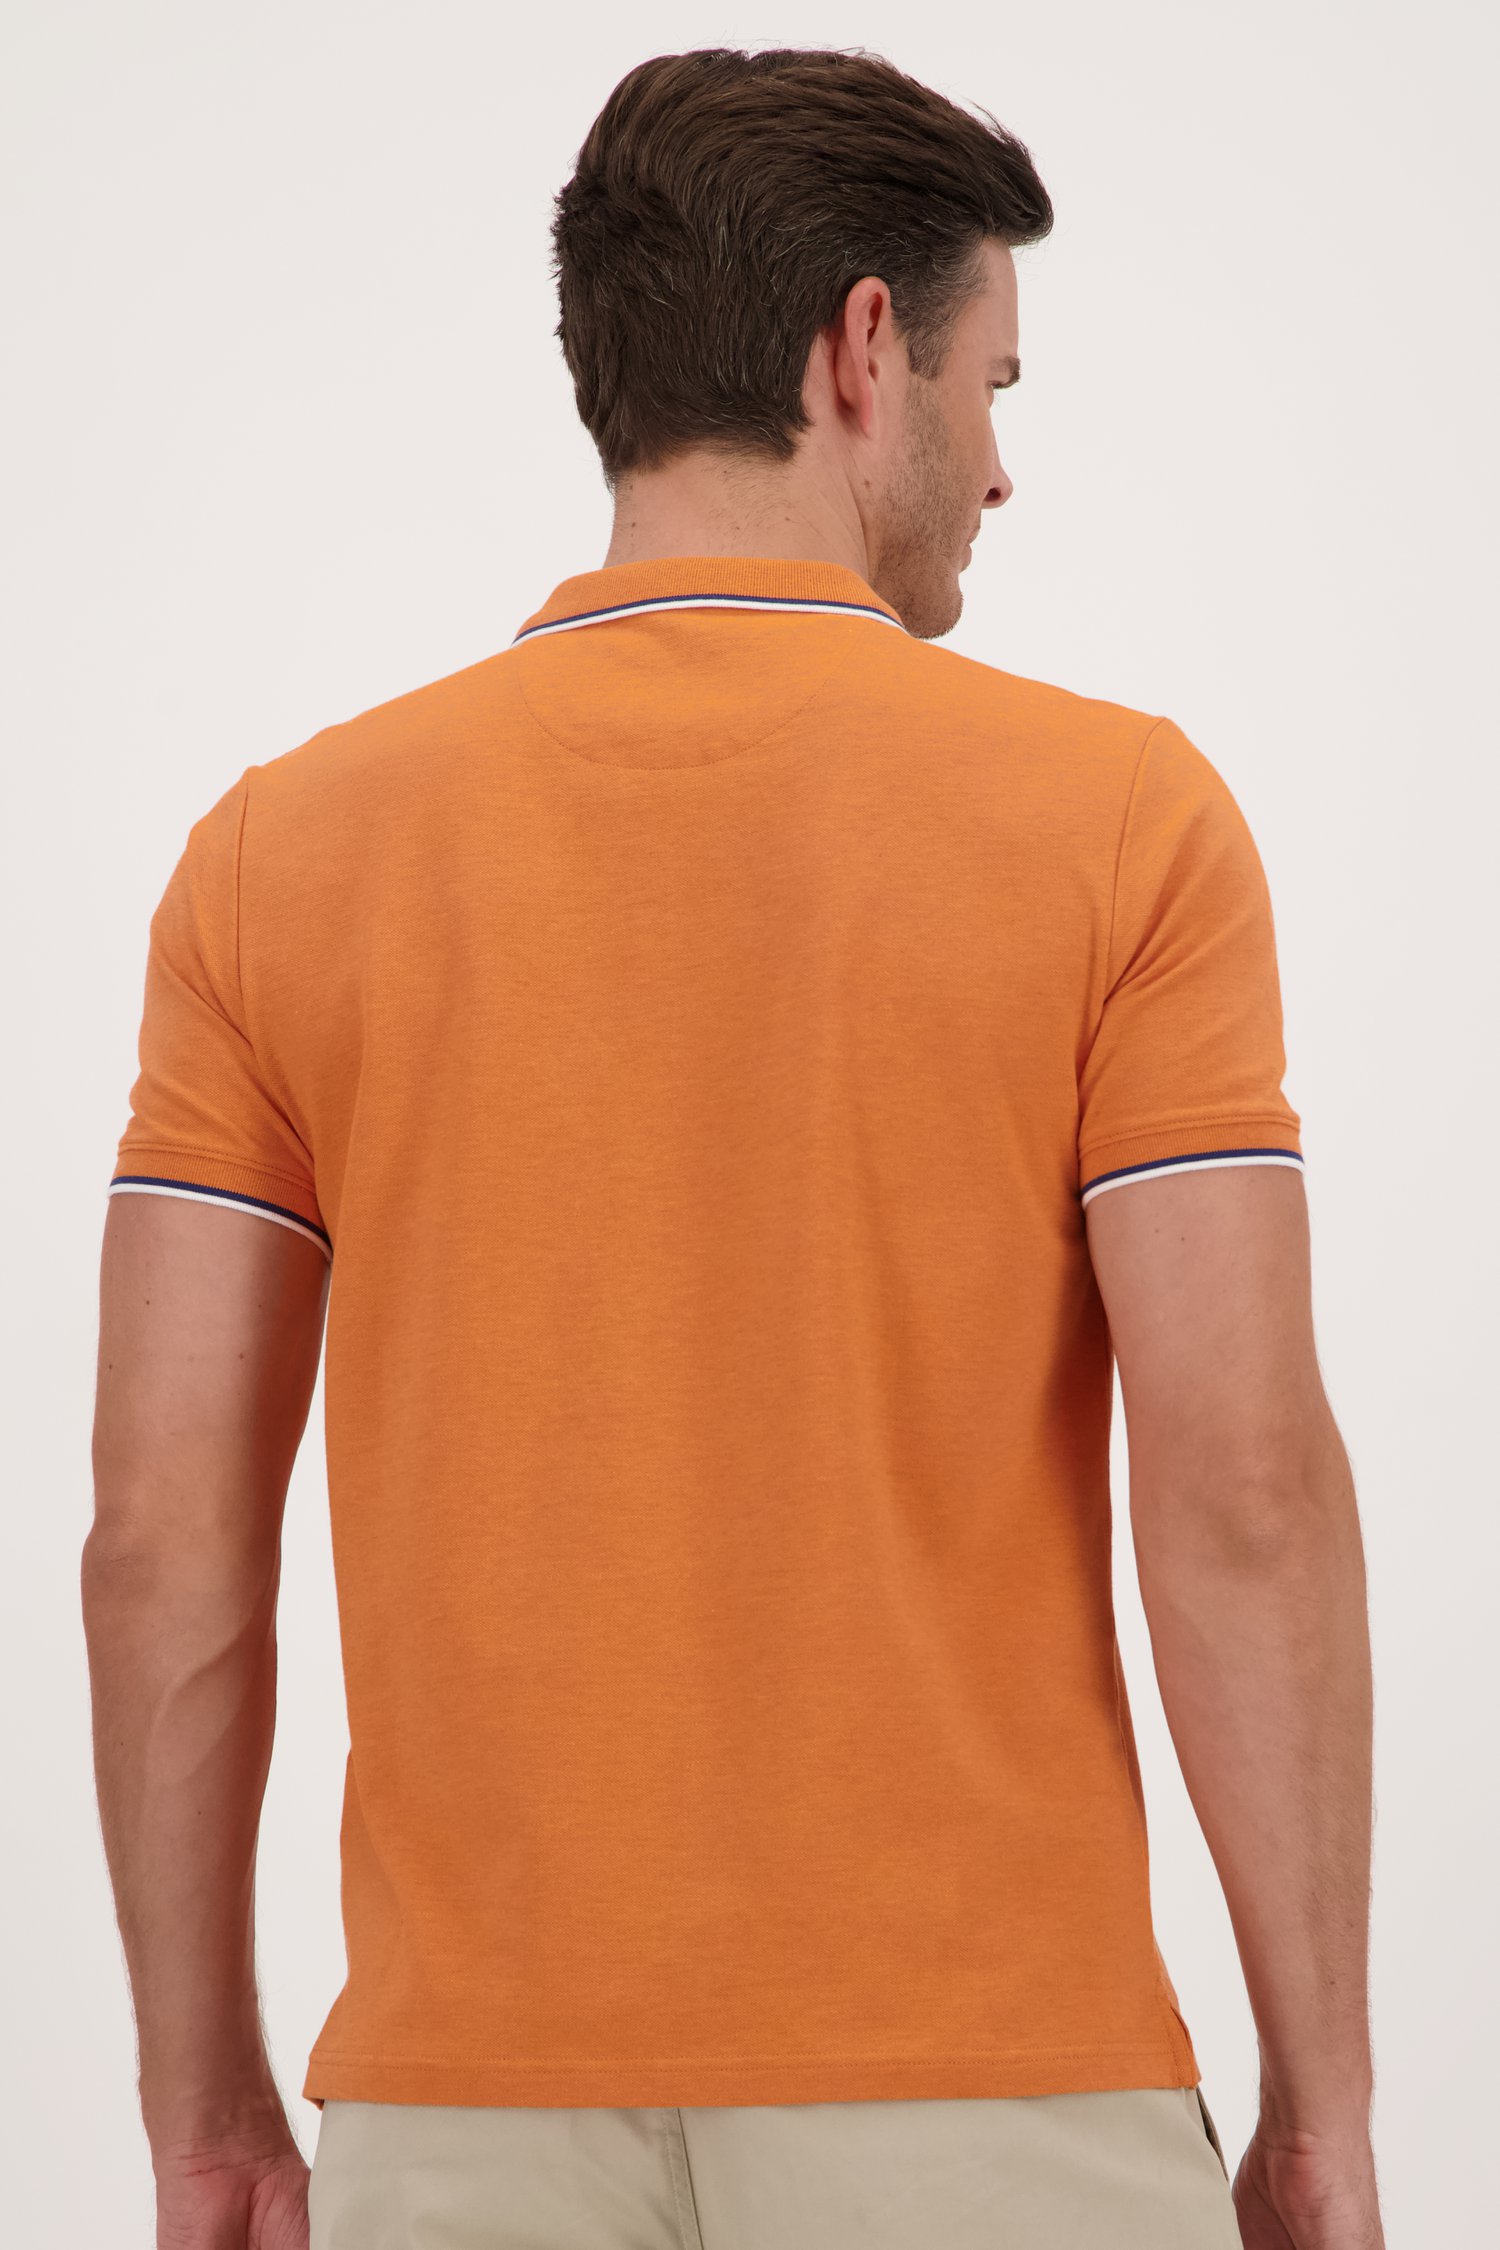 Polo orange à manches courtes	 de Upper East pour Hommes